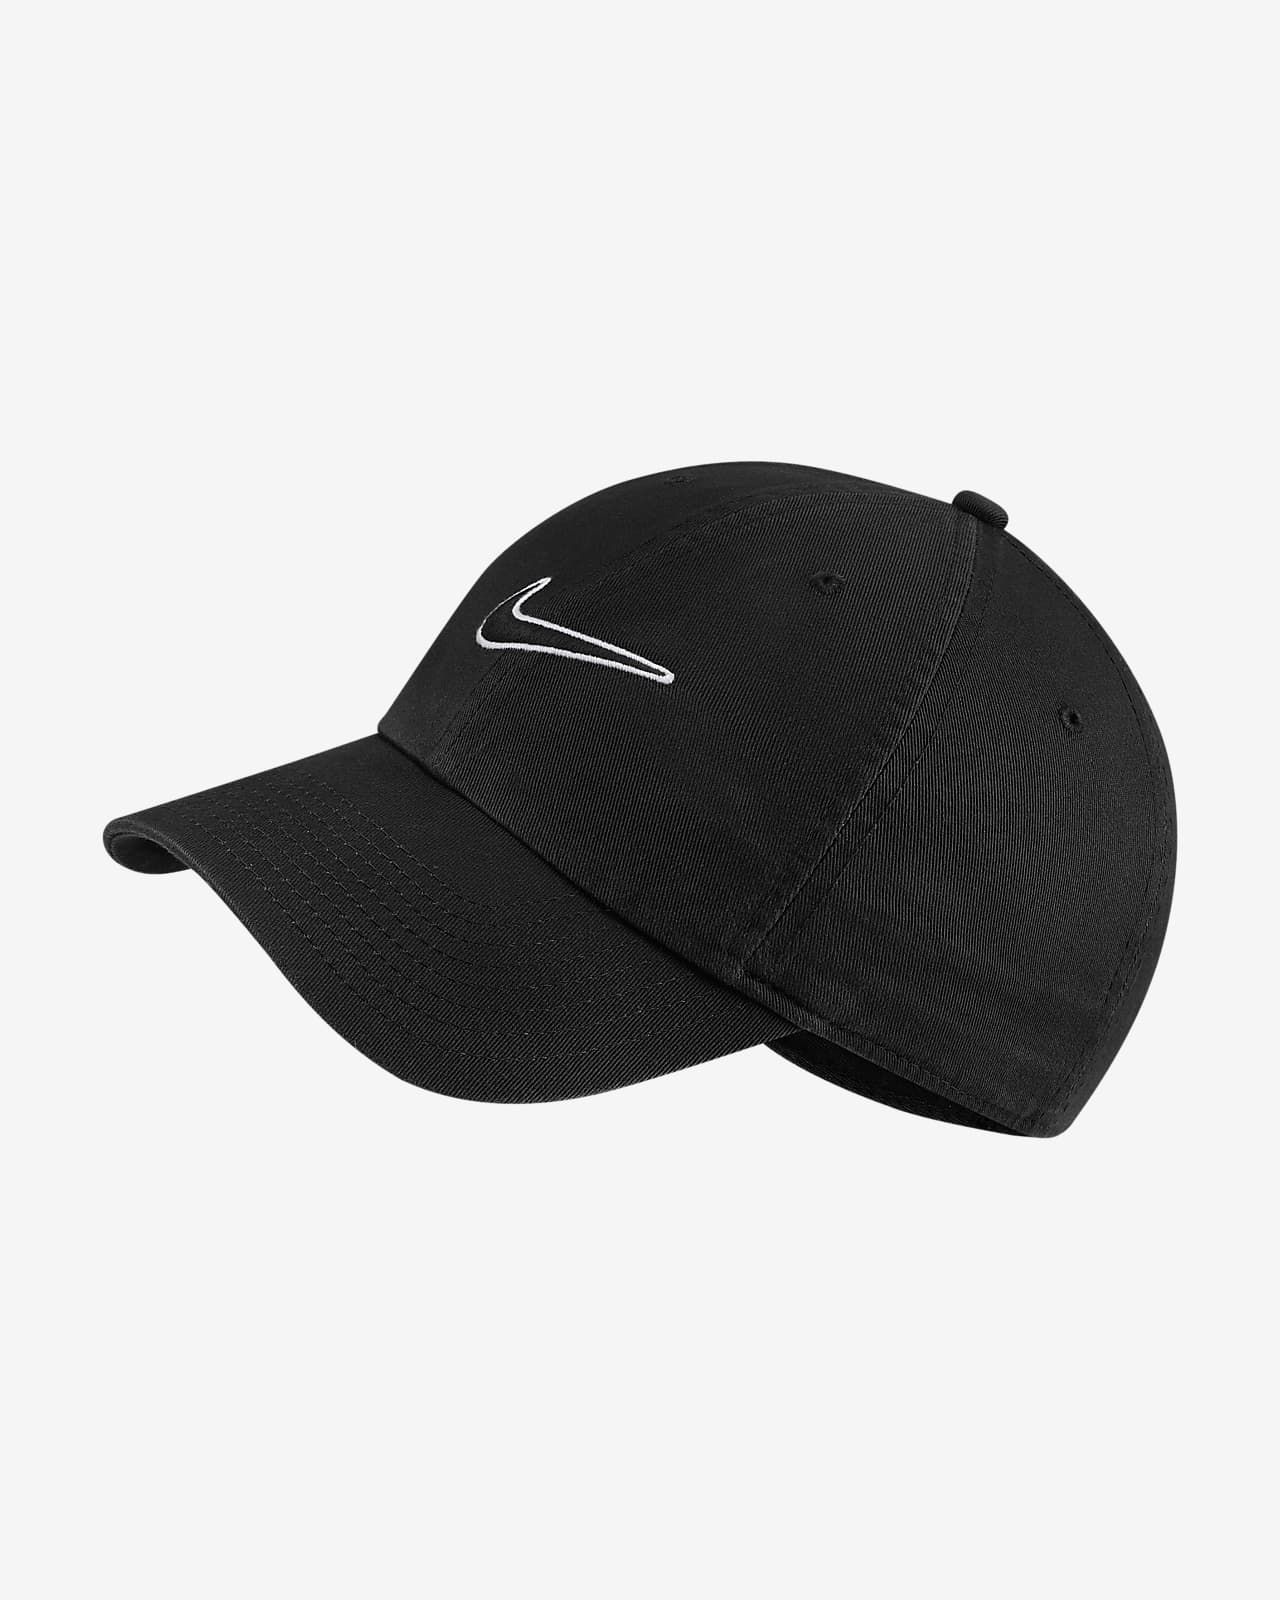 Adjustable Cap | Nike (US)